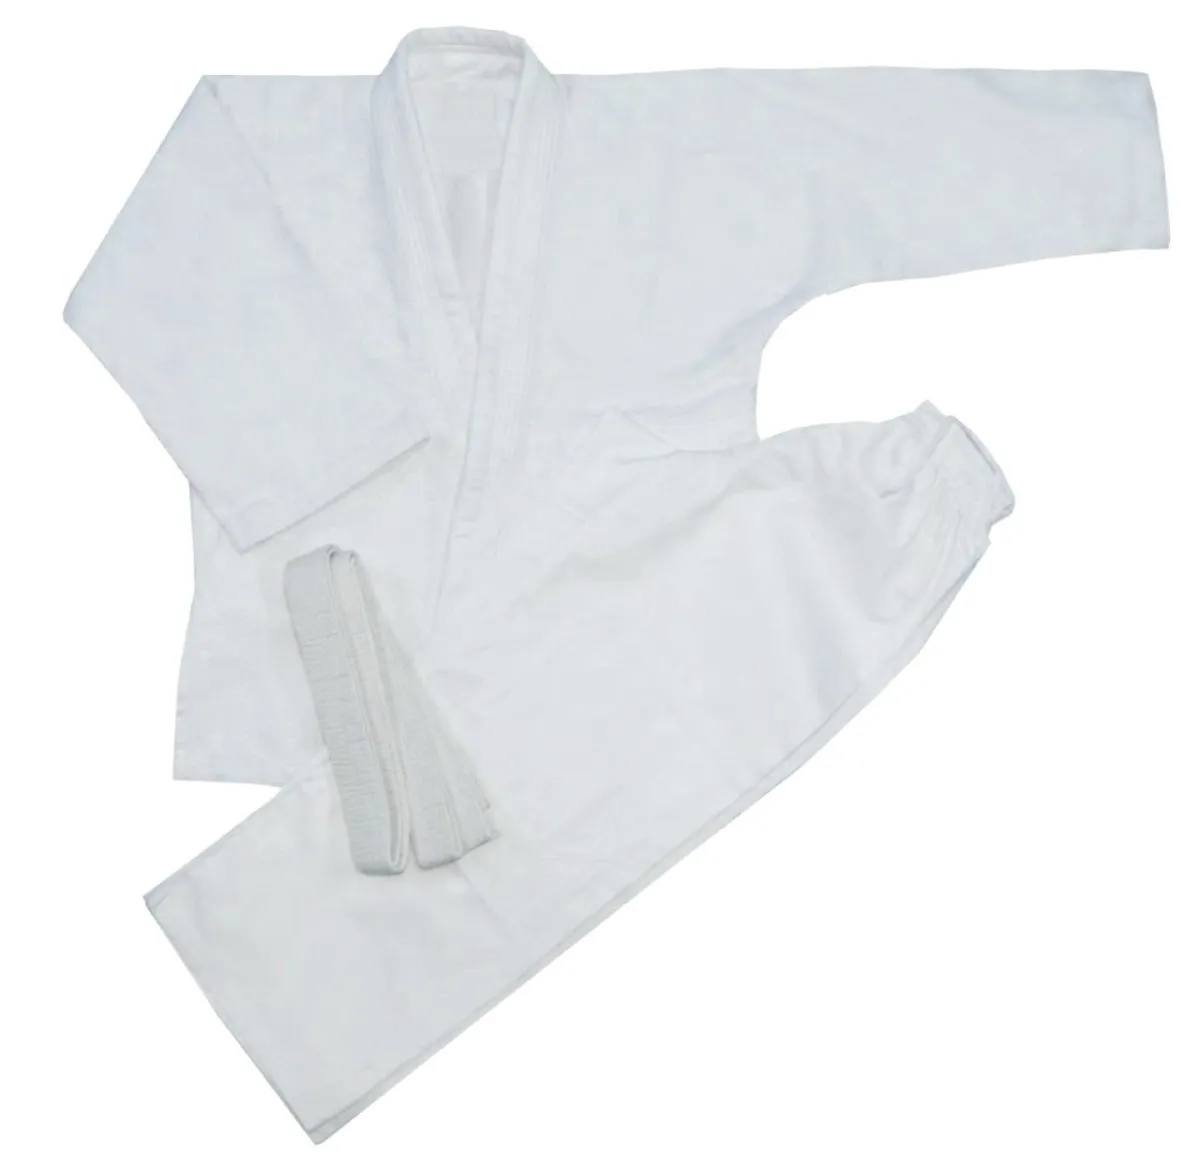 Traje basico de judo para ninos y adultos, con tejido de lagrima blanca